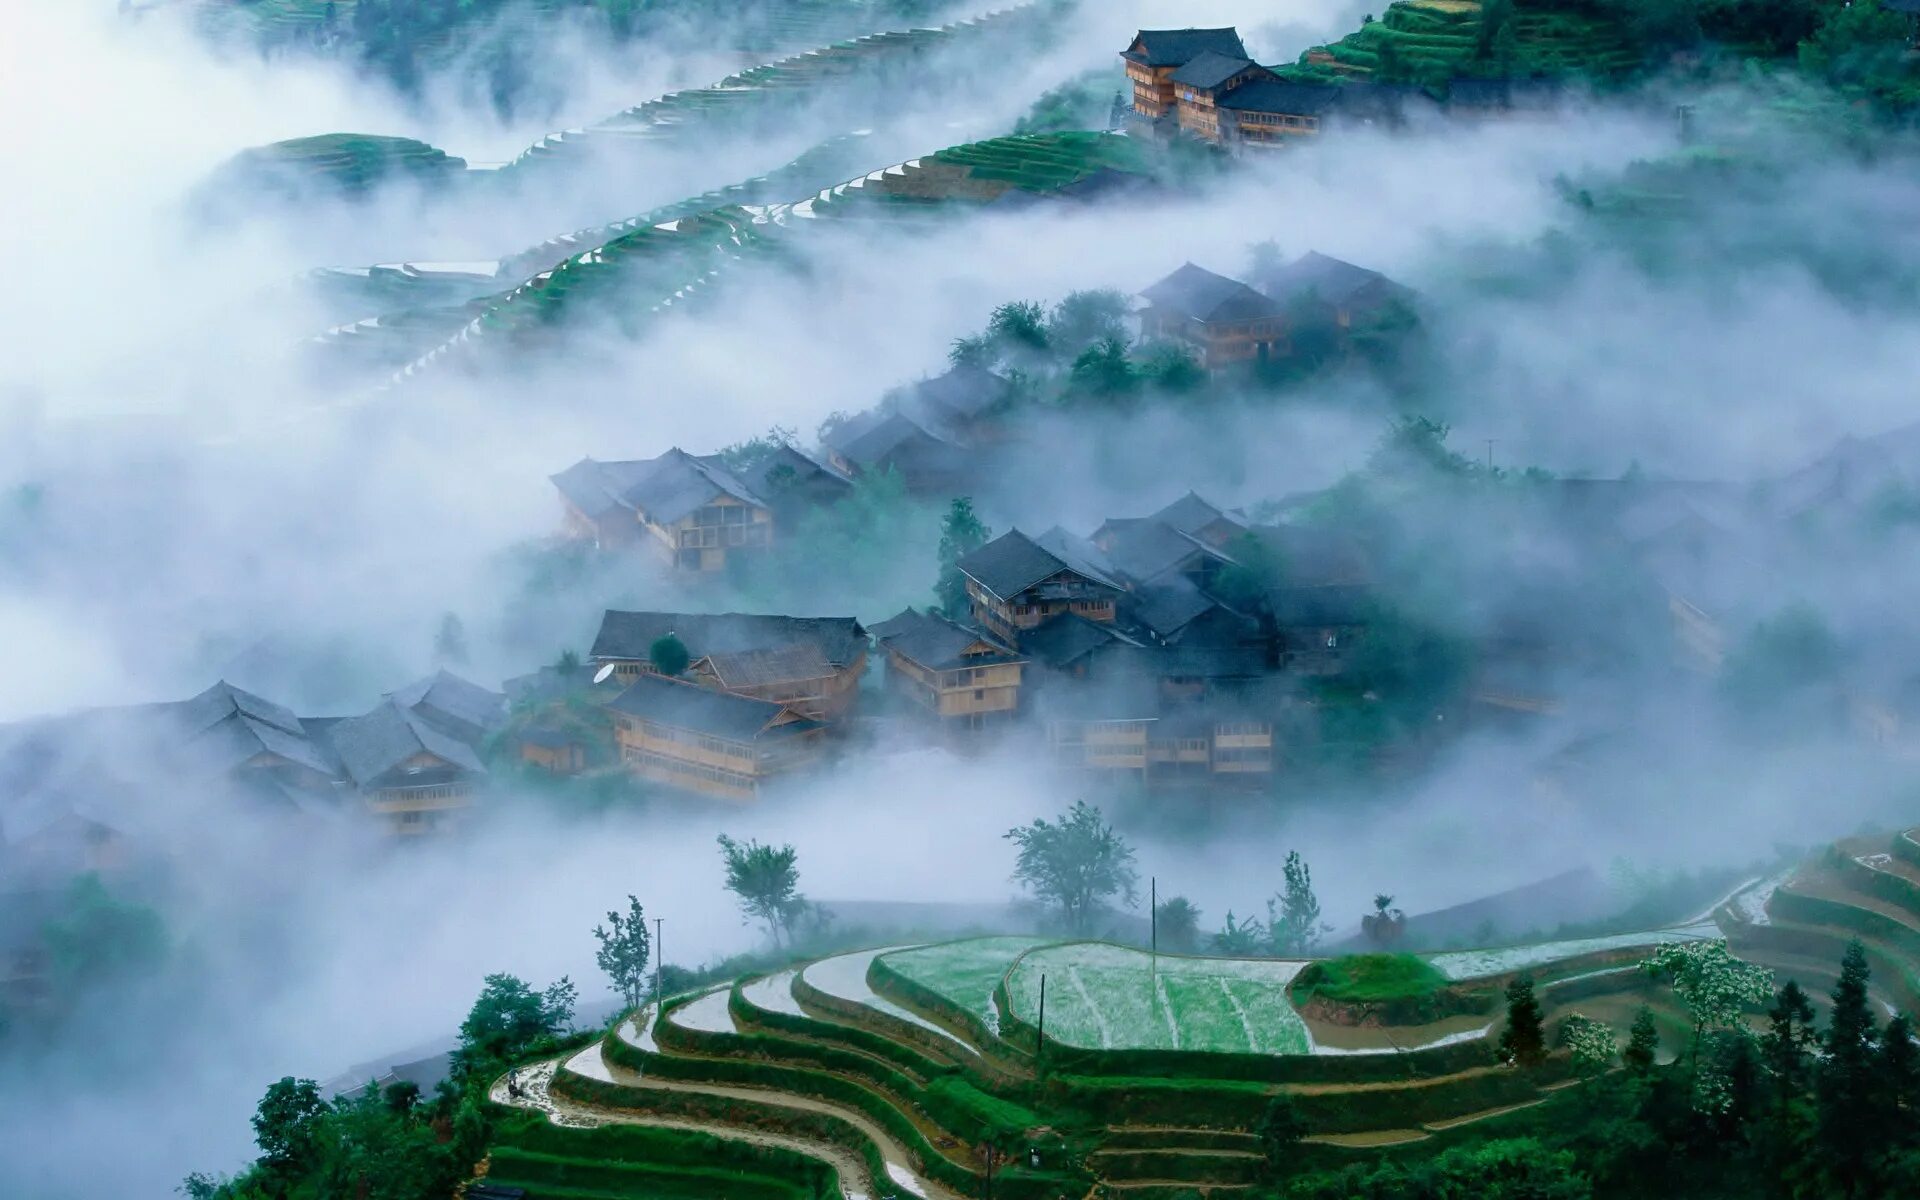 Горы Хуаншань, Китай. Longsheng Rice Terraces. Горах УИ провинции Фуцзянь монастырь. Деревня Гуанси Китай. Китай обои на стол